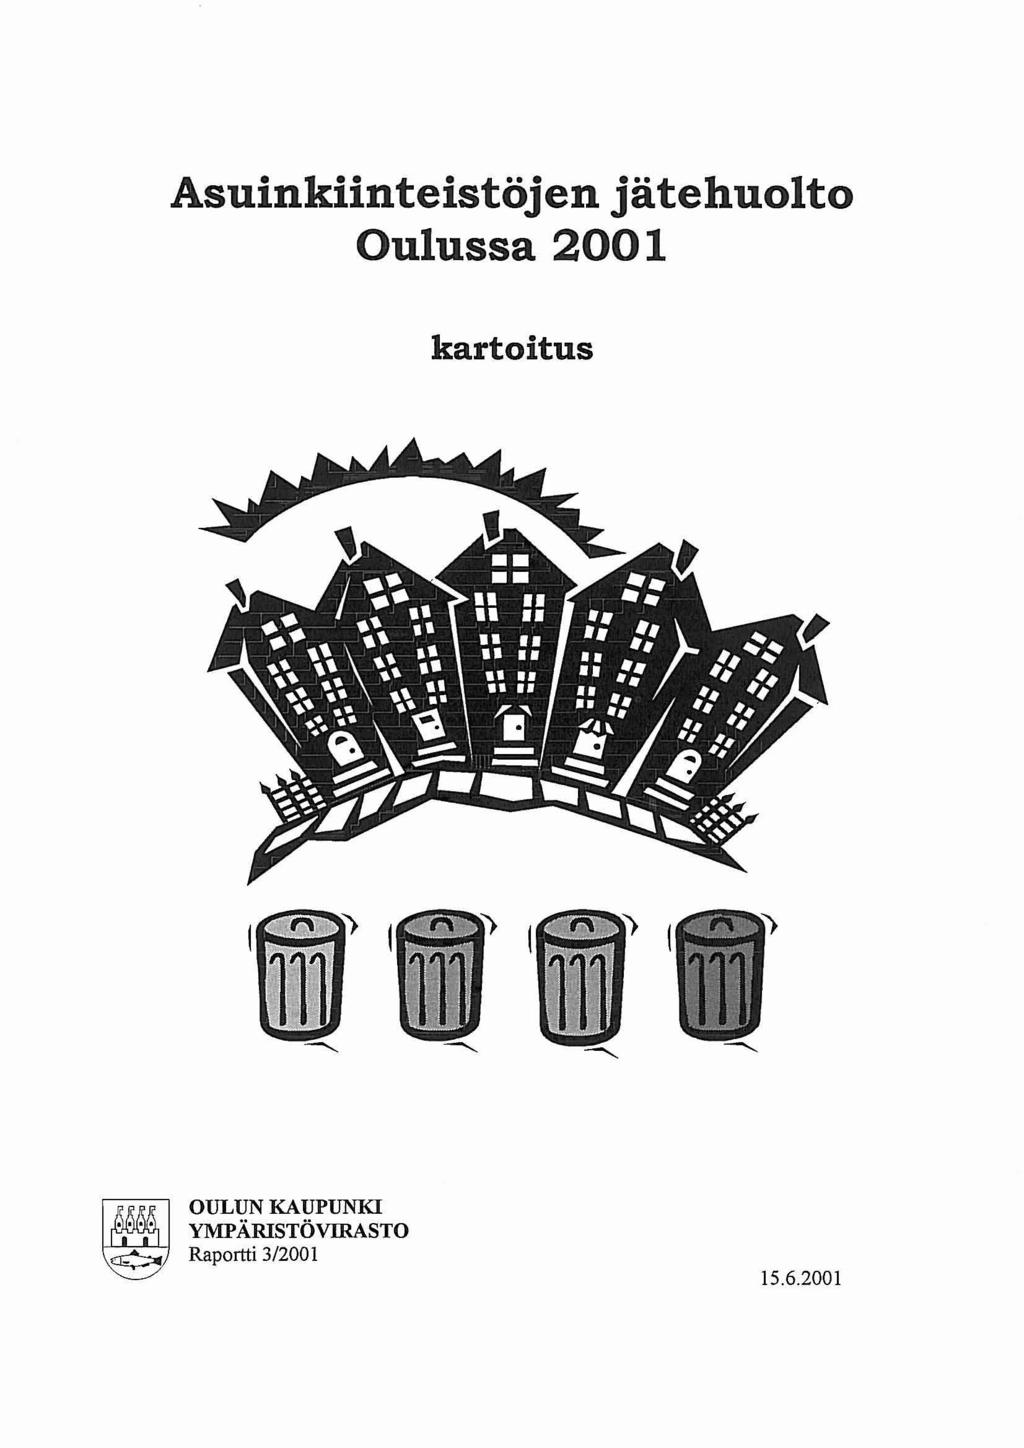 Asuinkiinteistöjen jätehuolto Oulussa 2001 kartoitus